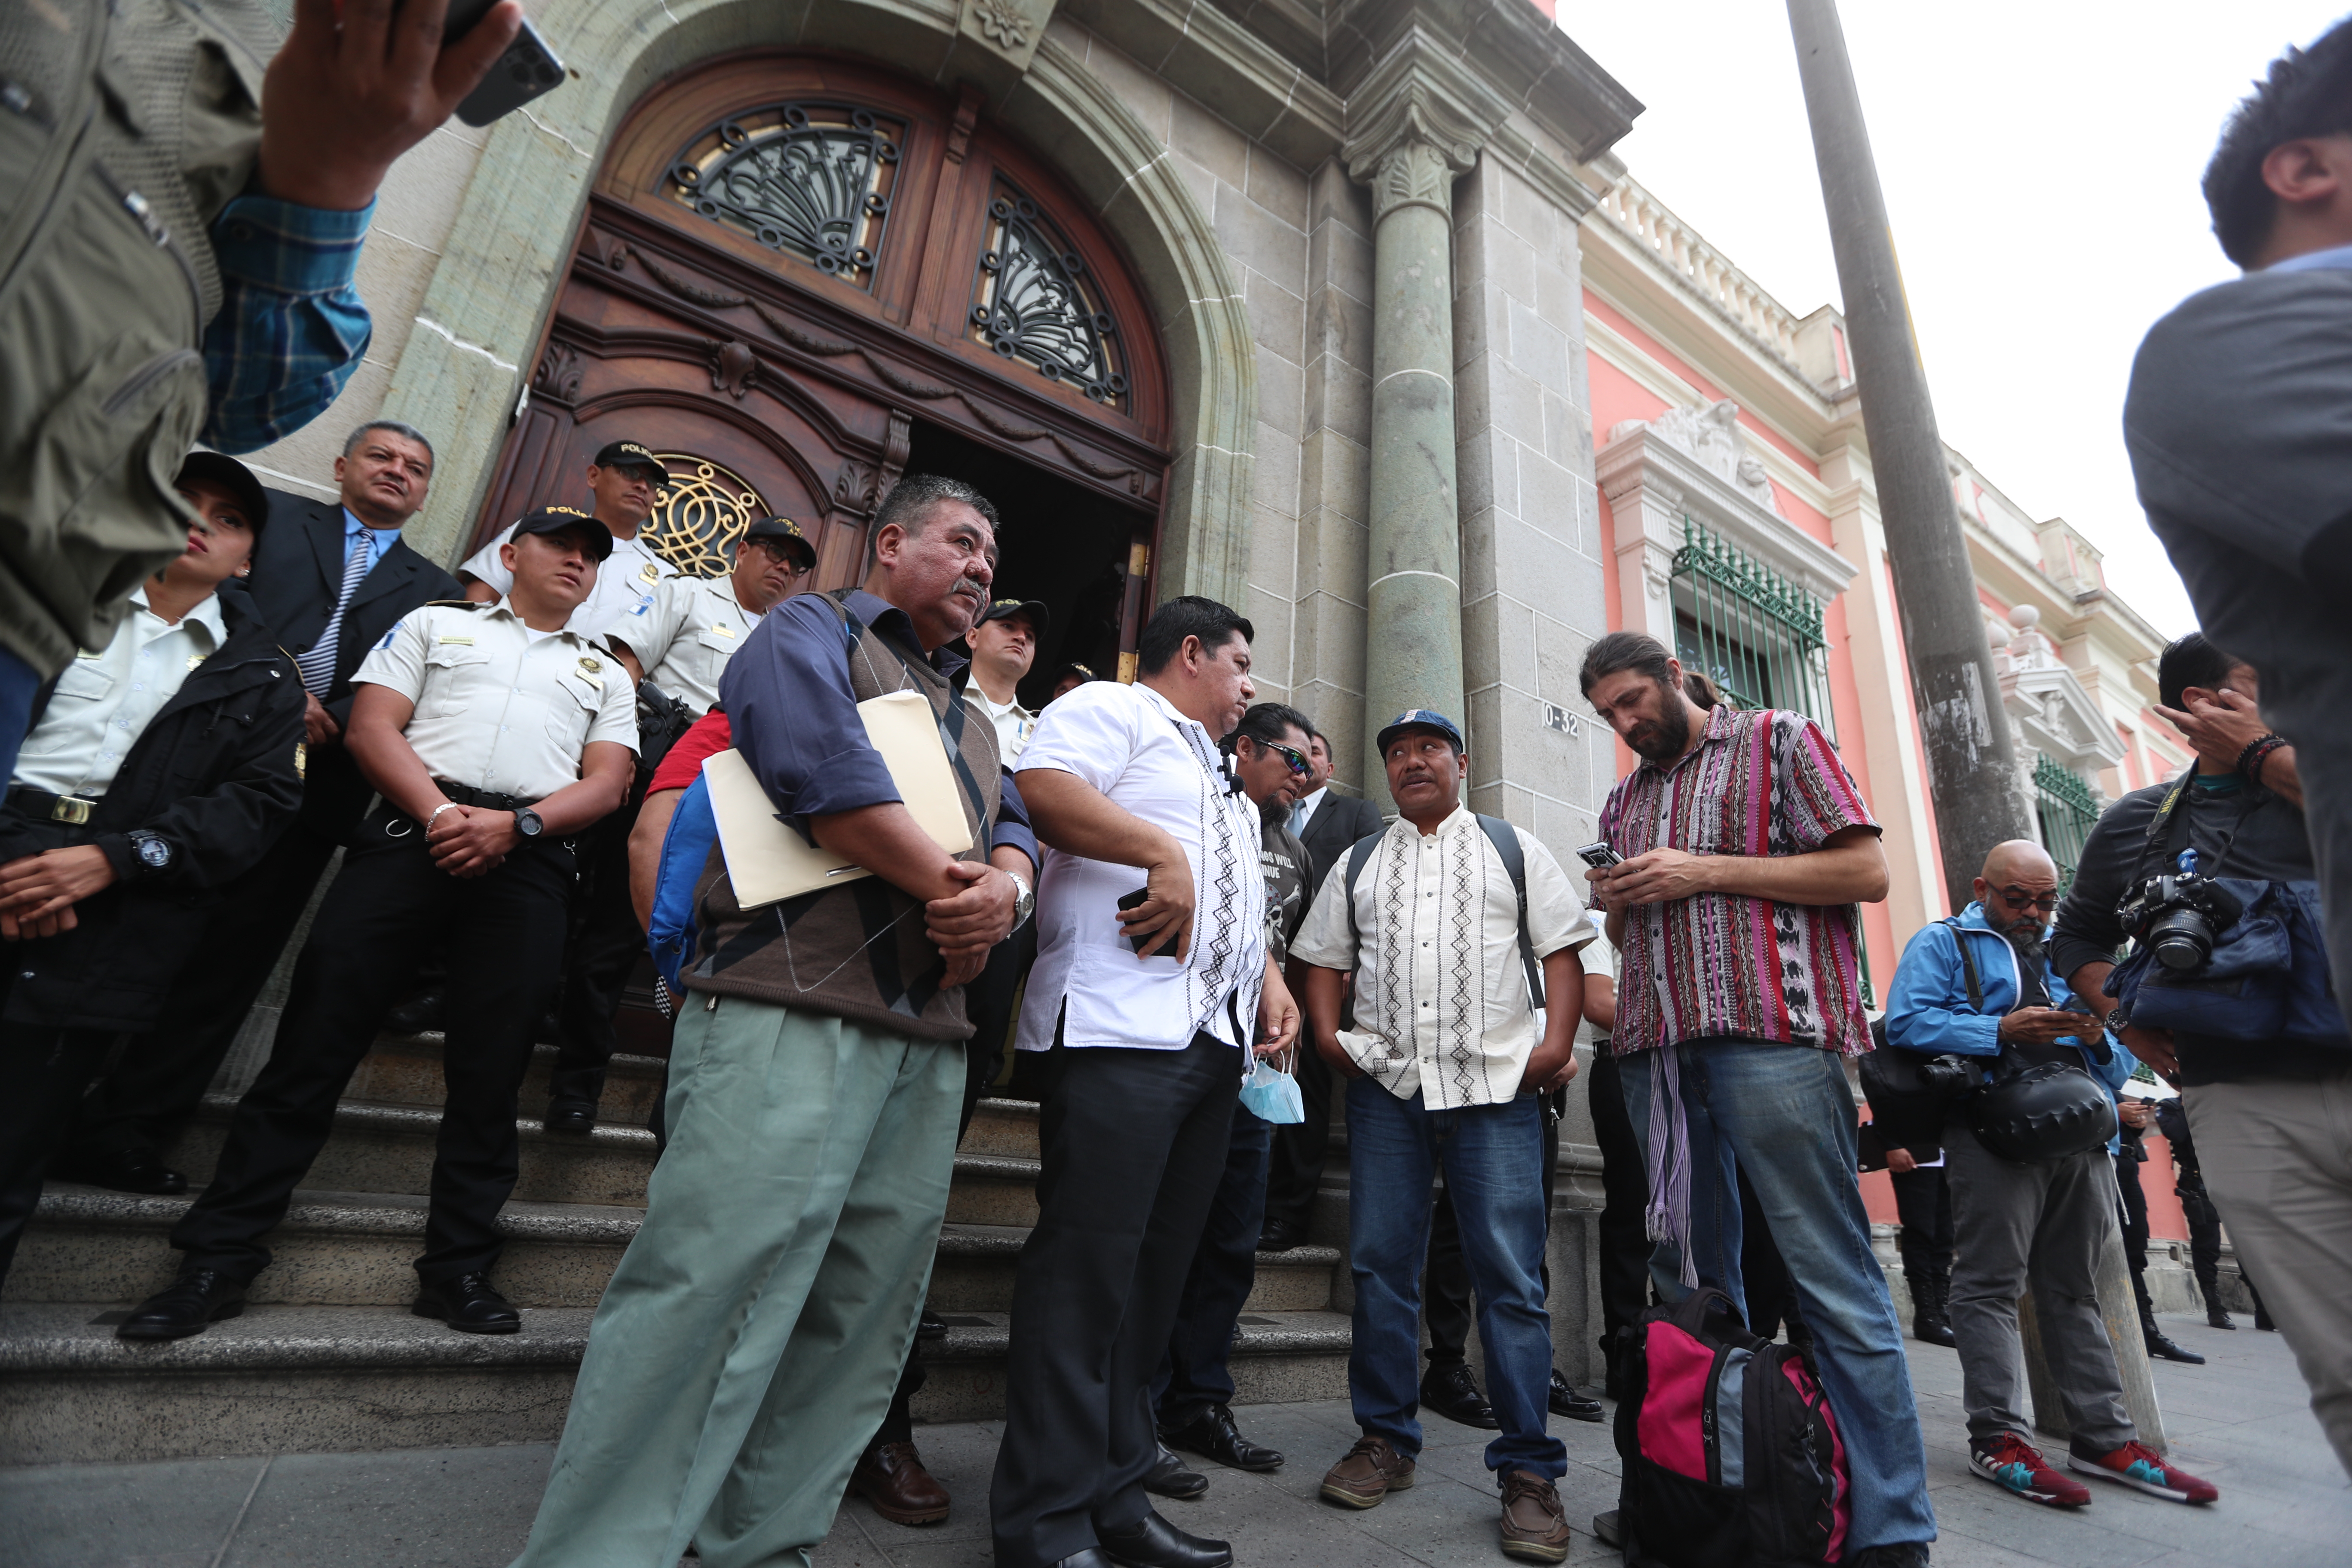 Organizaciones sociales entregaron sus peticiones en la sede central del TSE. Fotografía: Prensa Libre (Juan Diego González). 